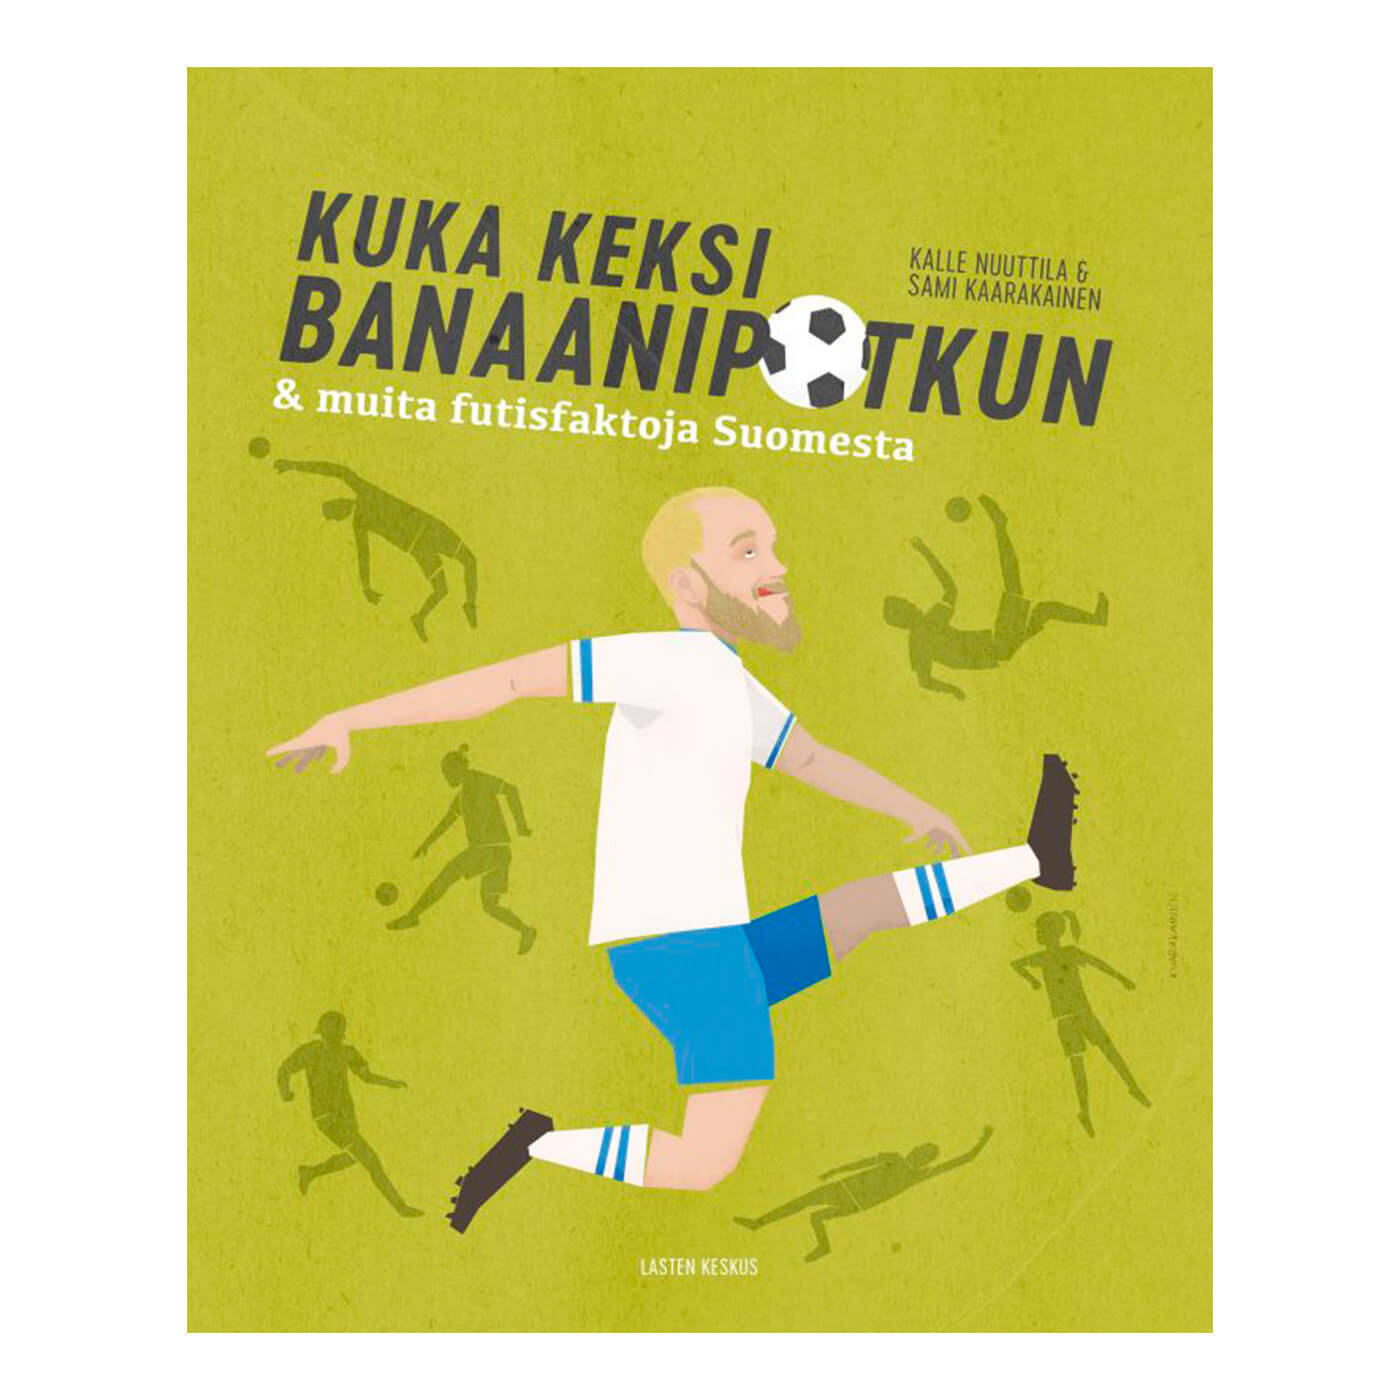 Kuka keksi banaanipotkun ja muita futisfaktoja Suomesta book